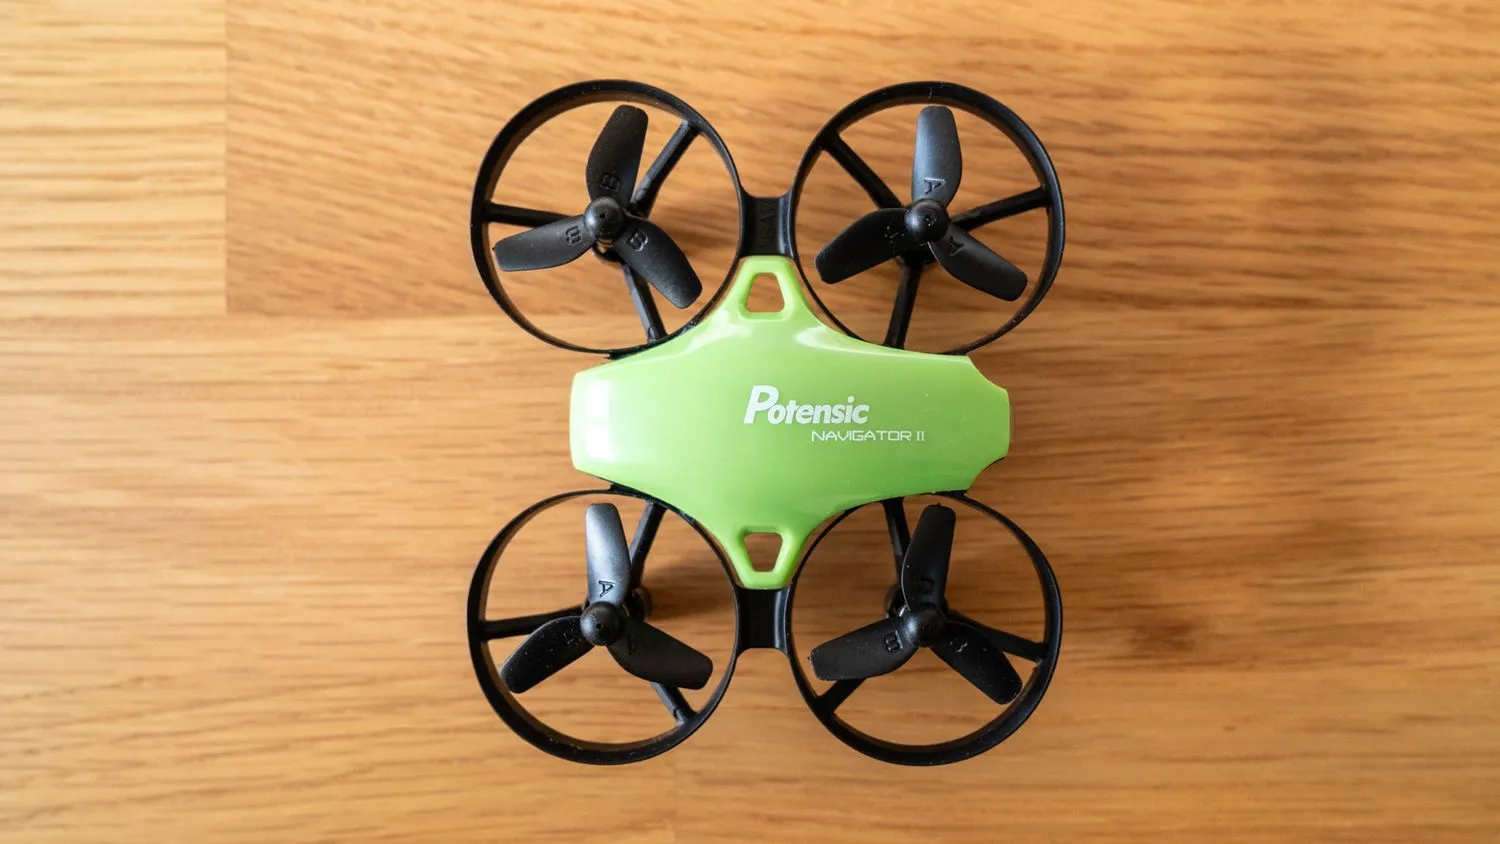 Potensic A20 Mini-Drohne von oben auf einem Holztisch